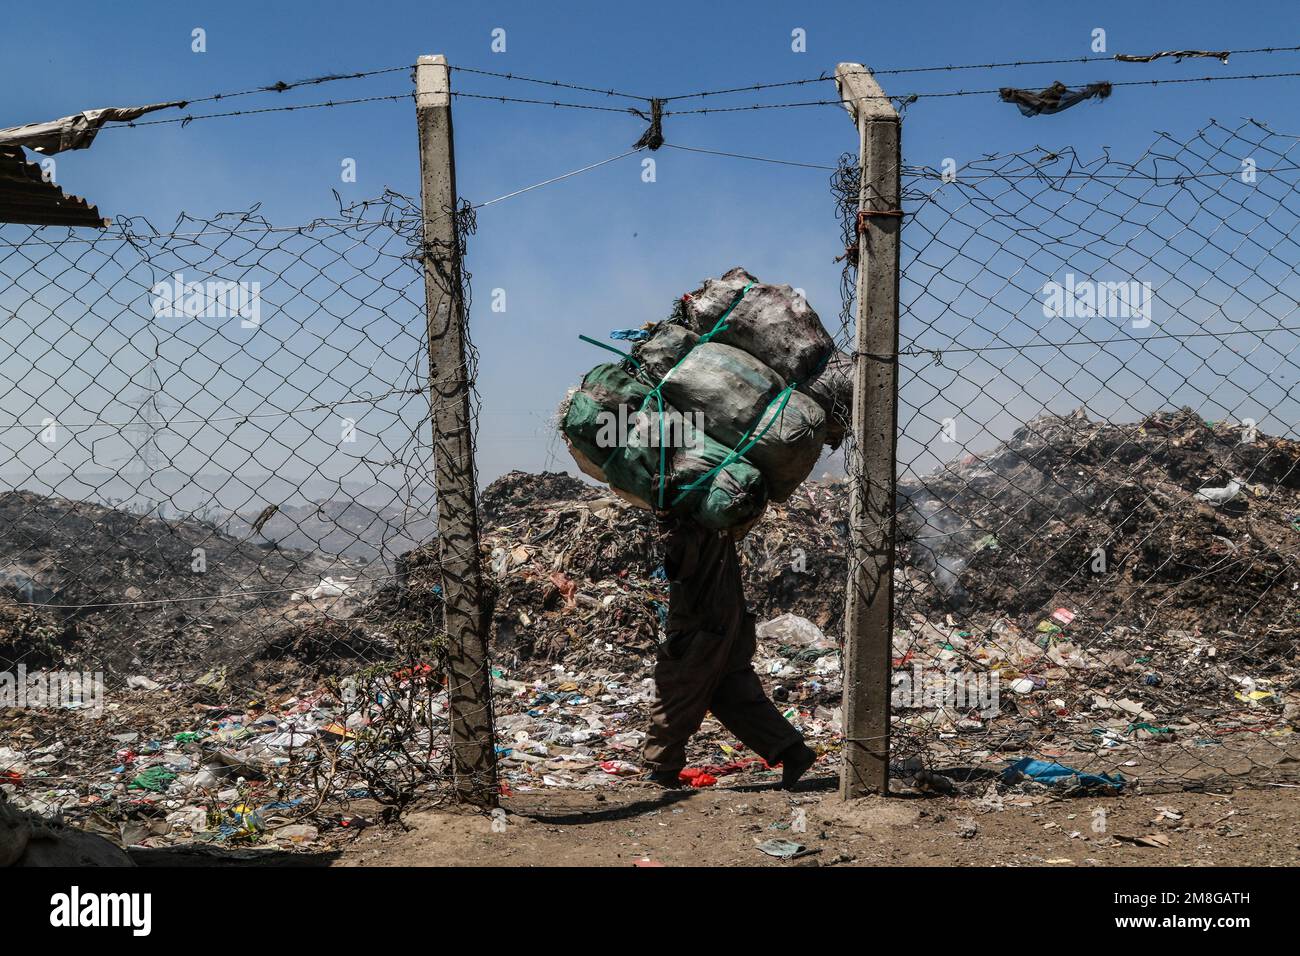 Ein Abfallsammler transportiert Müllsäcke mit Abfall zum Recycling neben dem brennenden Müll auf dem Hauptdepot von Nakuru. Da Abfälle selten getrennt und stark mit allen Arten von Abfall vermischt werden, kann das Verbrennen potenziell giftige Dämpfe erzeugen, die ein Problem für die öffentliche Gesundheit darstellen und auch zum Klimawandel beitragen können. Gemeinden, die in der Nähe von Mülldeponien arbeiten und leben, wo Müll offen verbrannt wird, sind dem Risiko von Atemwegserkrankungen und Krebs ausgesetzt. Frauen, die diesen Dämpfen ausgesetzt sind, können unter reproduktiven Gesundheitsproblemen leiden. Stockfoto